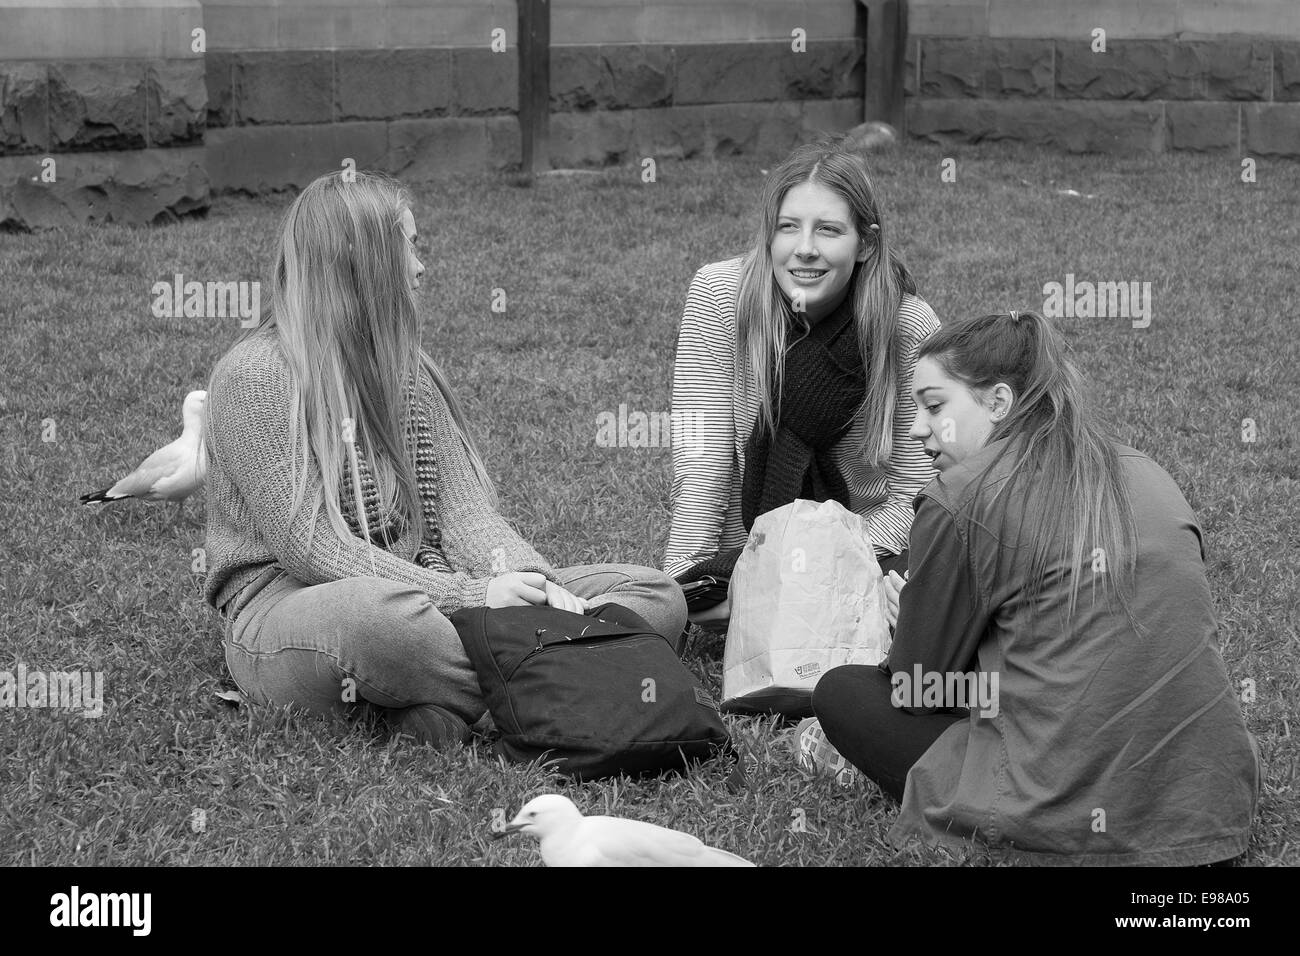 Junge Frauen Freunde sitzen In einem Park Stockfoto